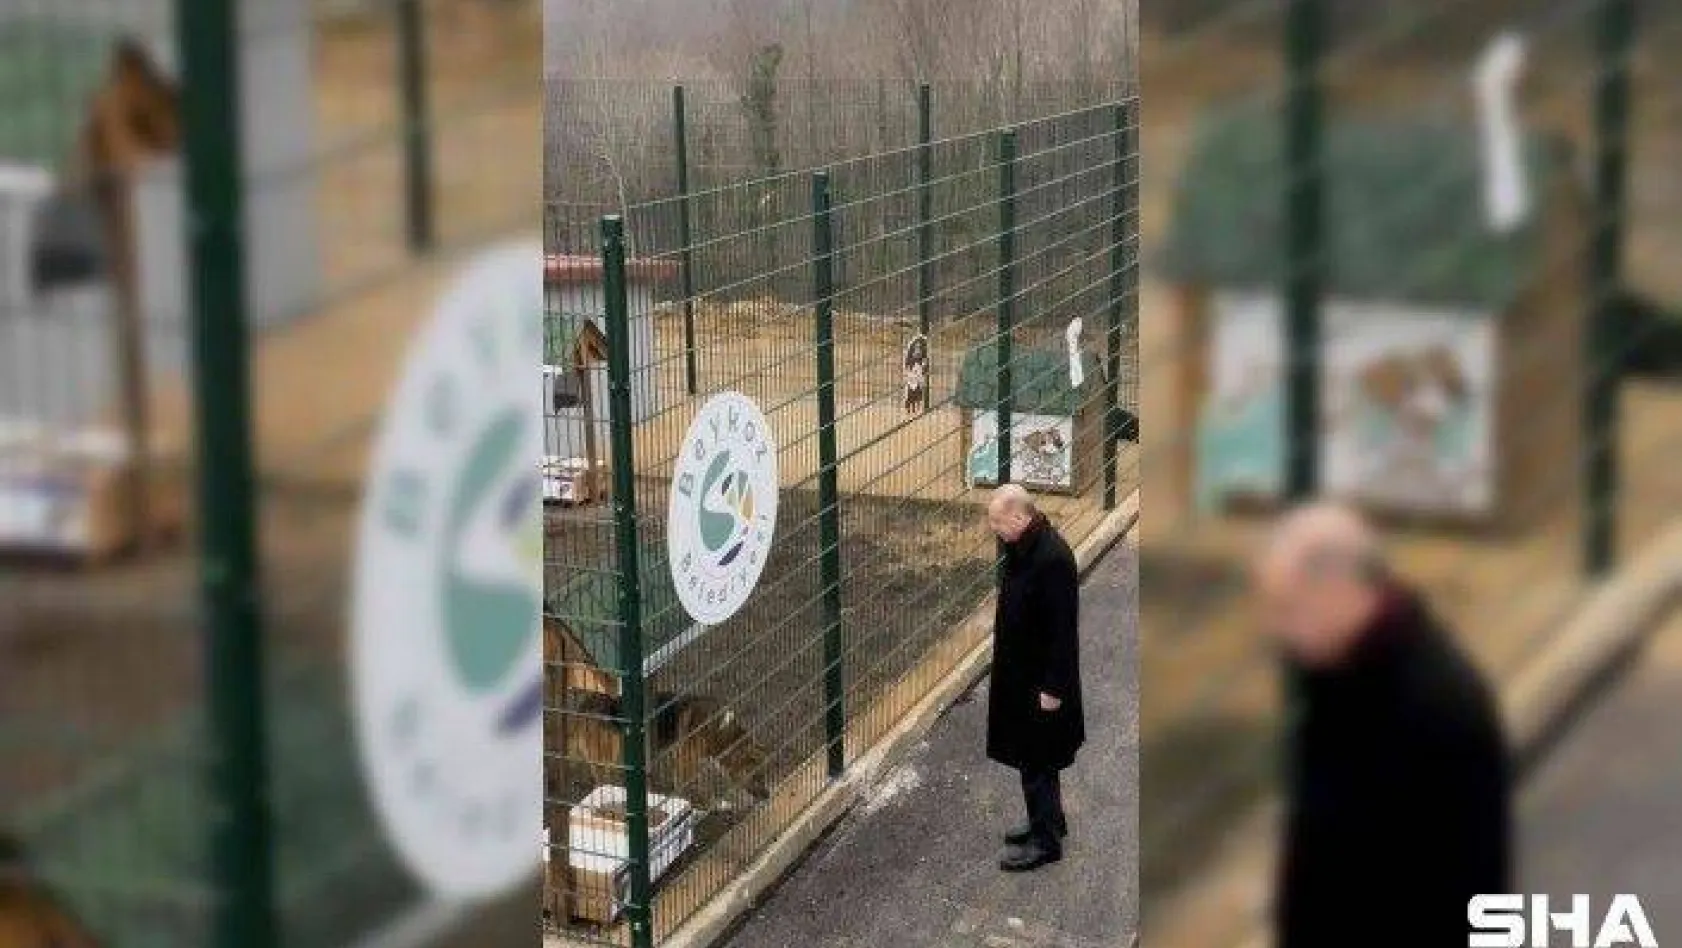 Cumhurbaşkanı Erdoğan, Beykoz hayvan barınağını ziyaret etti